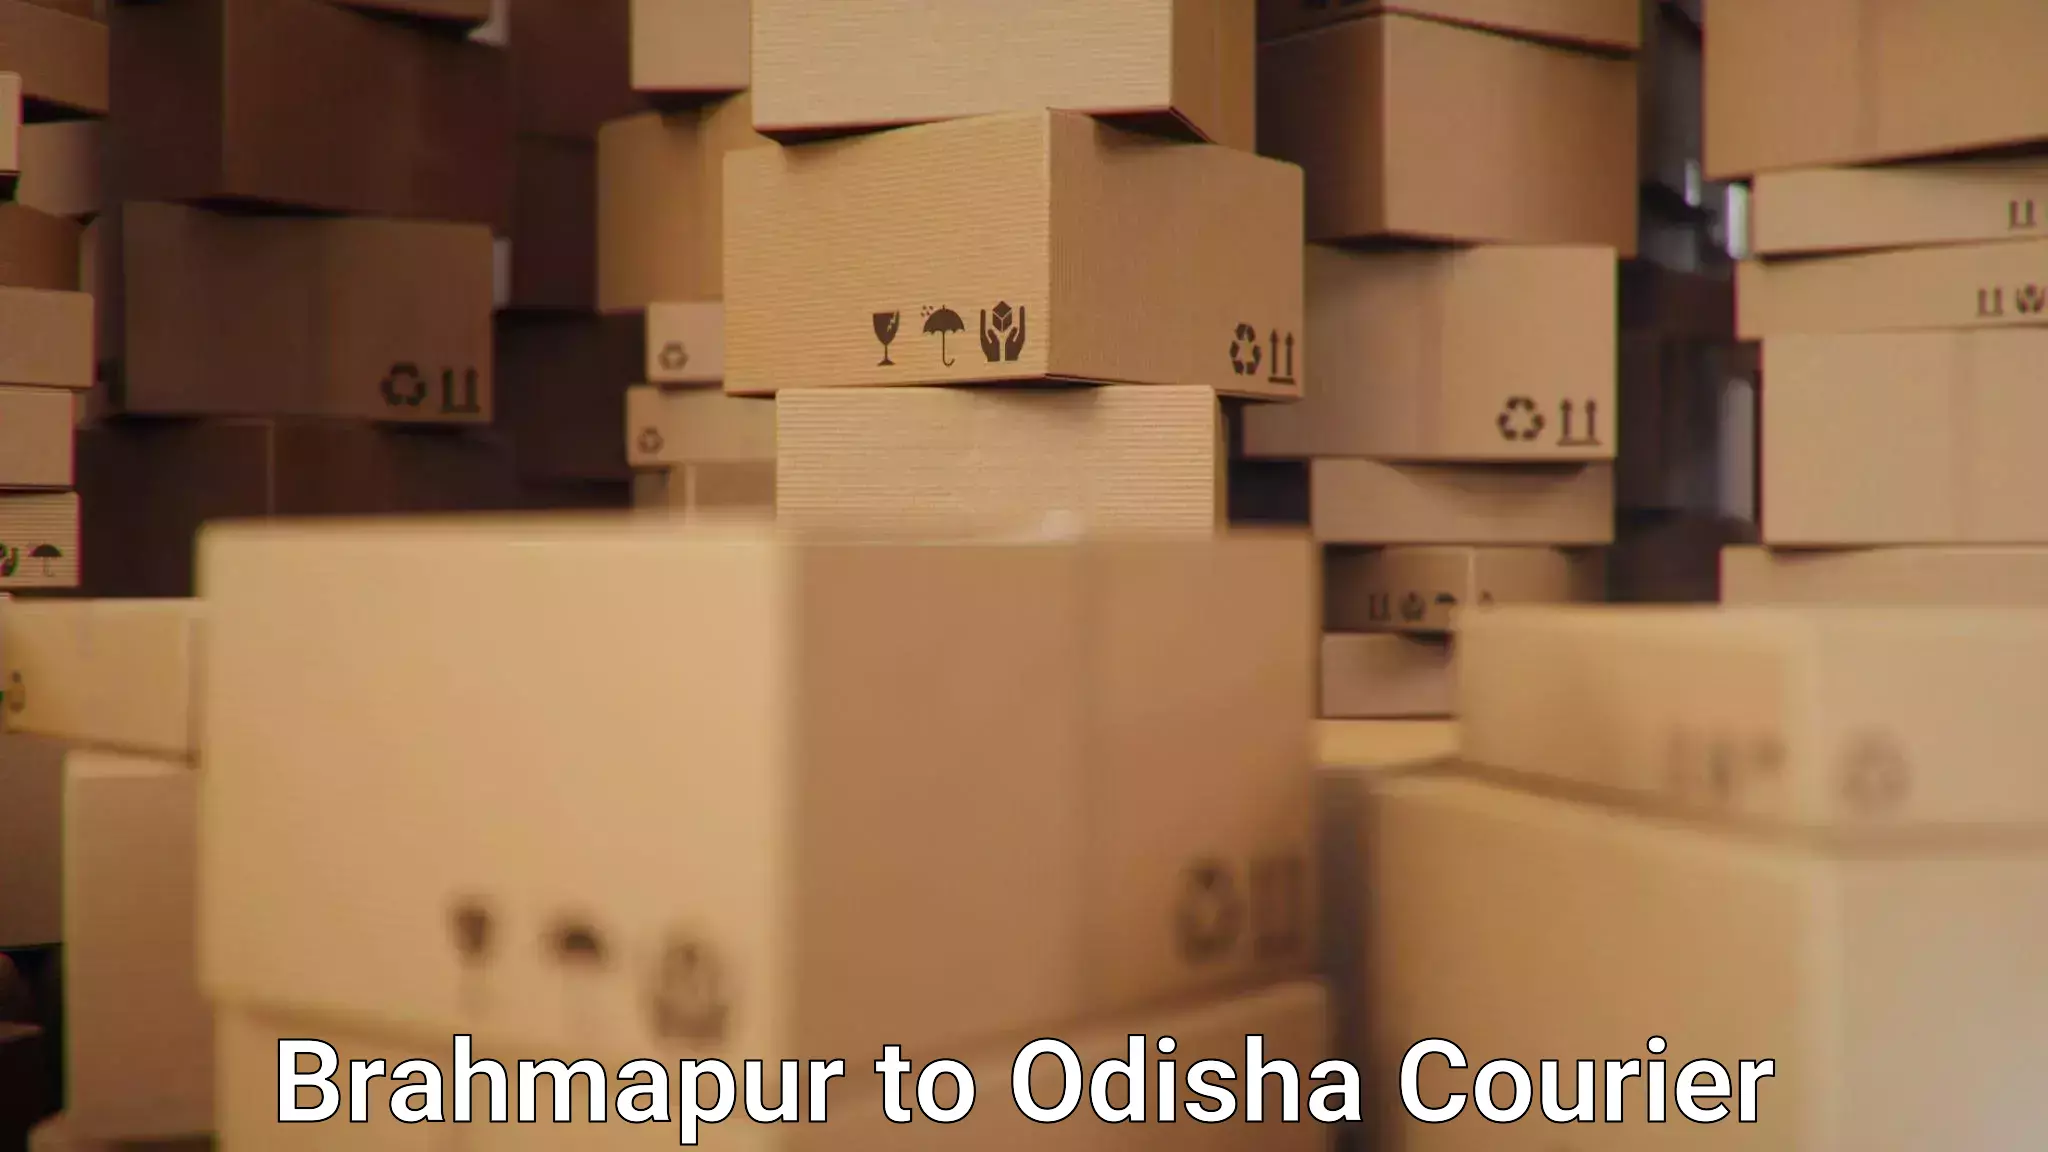 Courier rate comparison Brahmapur to Loisingha